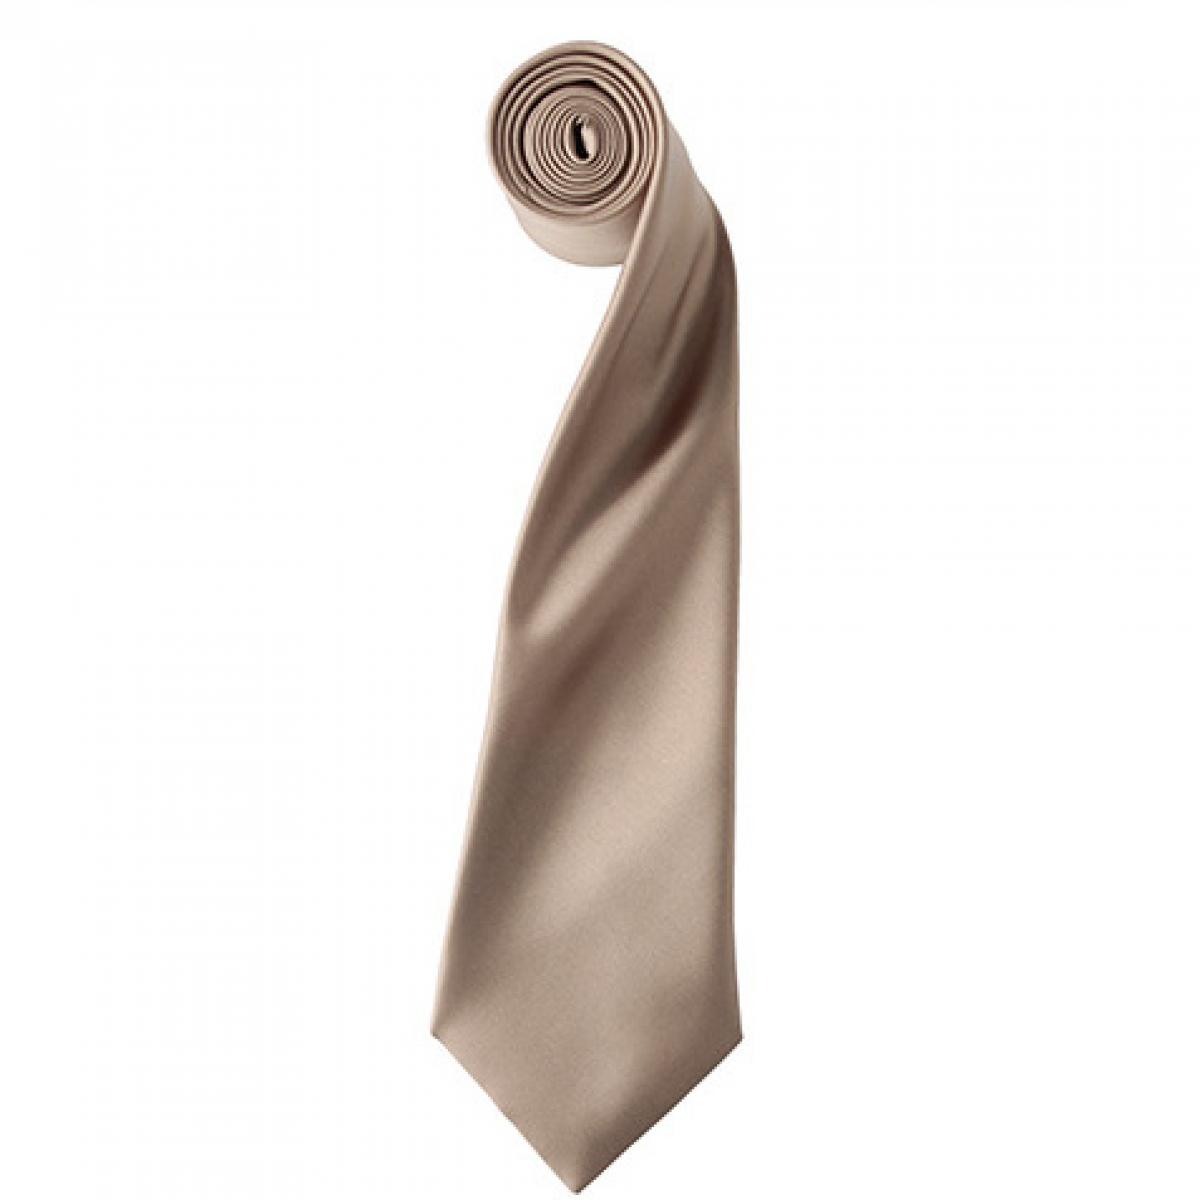 Hersteller: Premier Workwear Herstellernummer: PR750 Artikelbezeichnung: Satin Tie ´Colours´ / 144 x 8,5 cm Farbe: Khaki (ca. Pantone 7503)